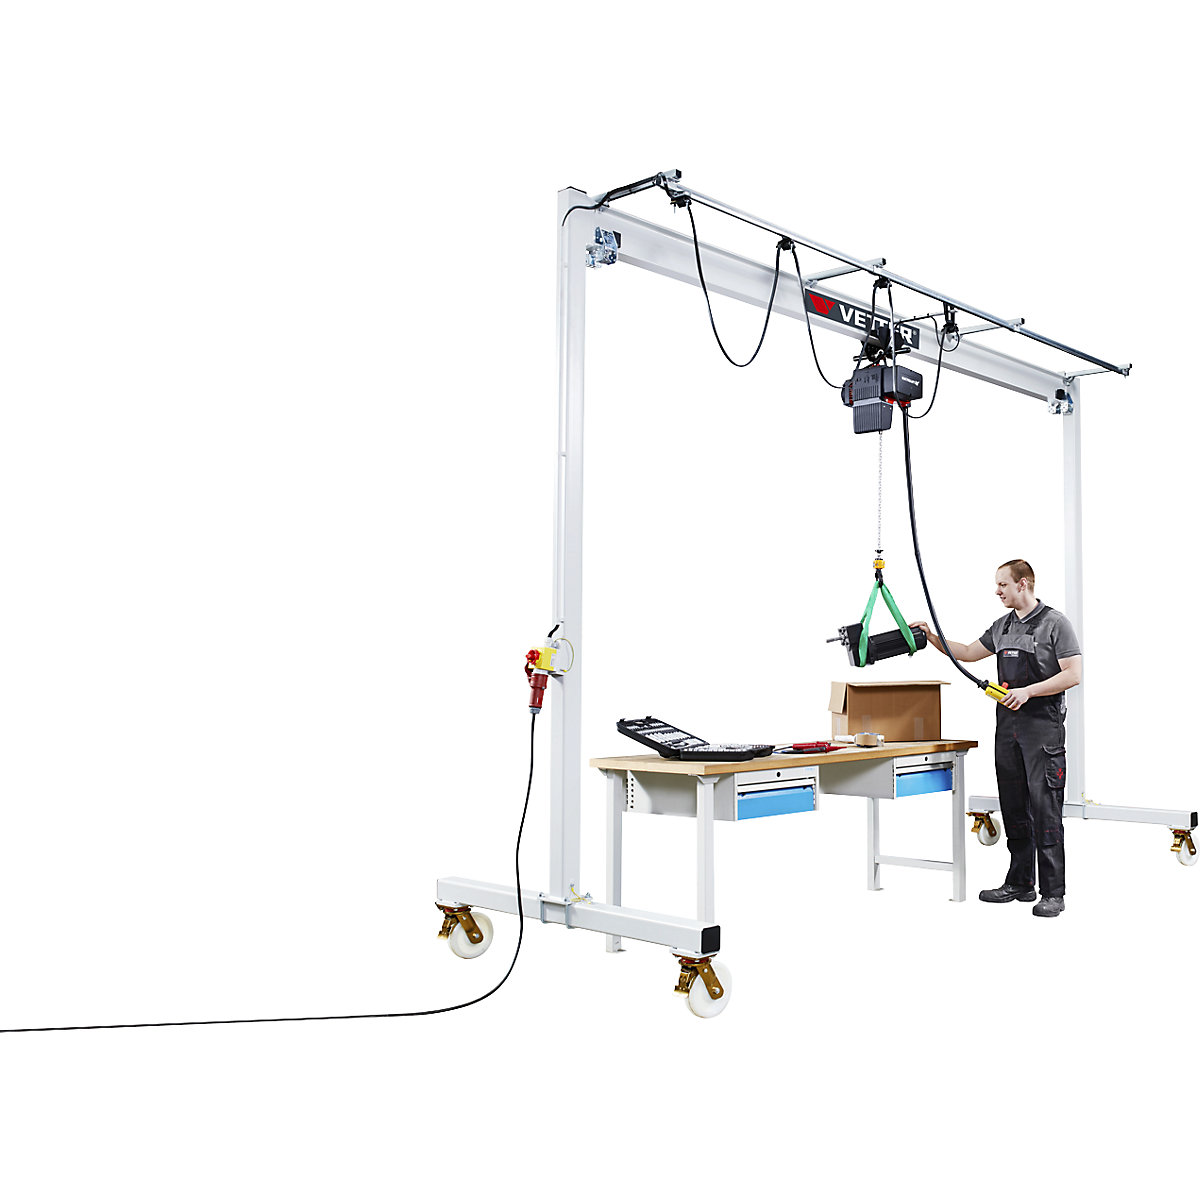 Steel mobile gantry crane PA – Vetter (Product illustration 2)-1